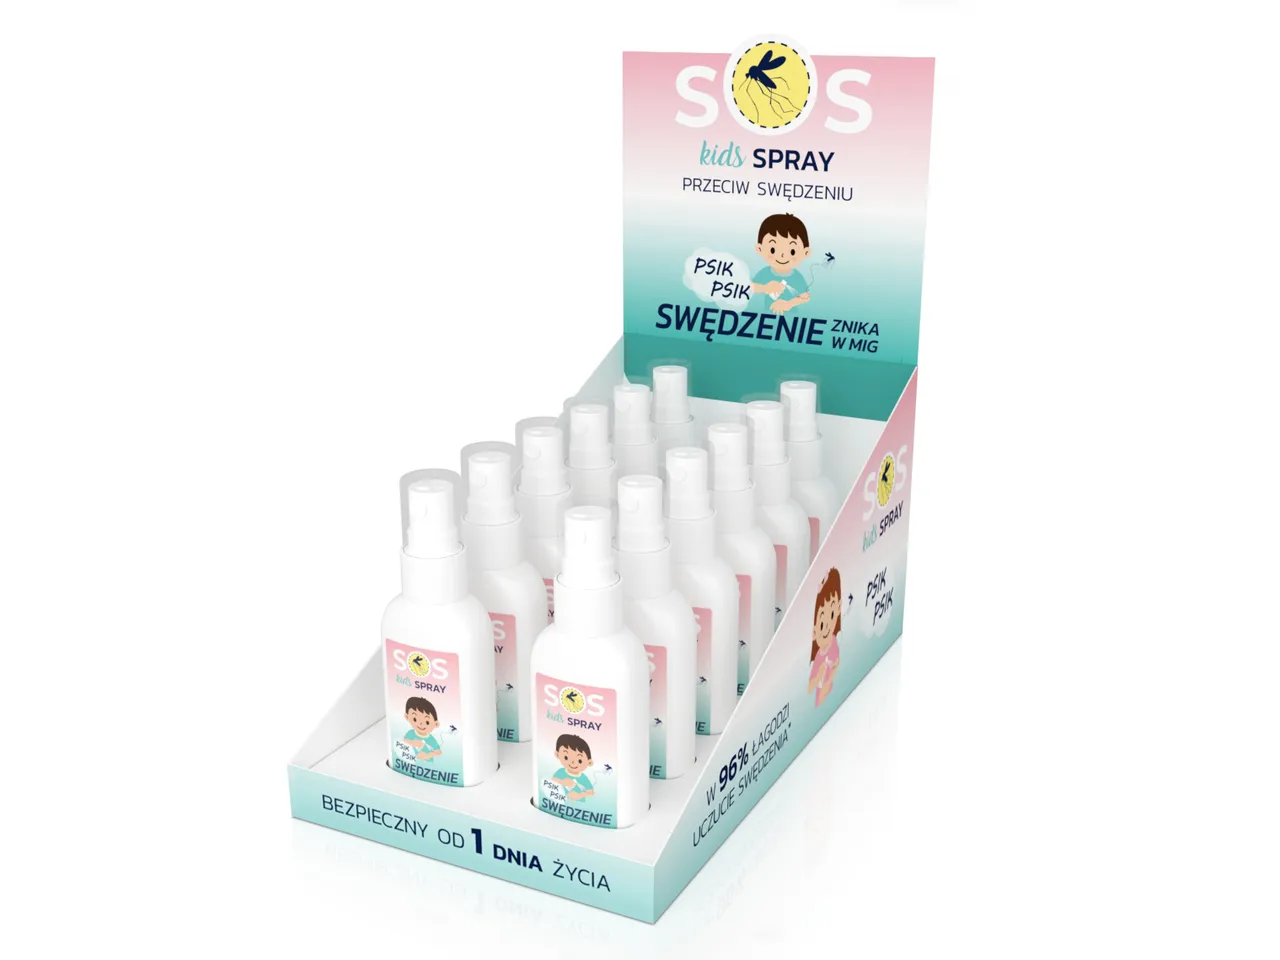 SOS Kids Spray, spray przeciw swędzeniu dla dzieci, display 12 x 40 ml